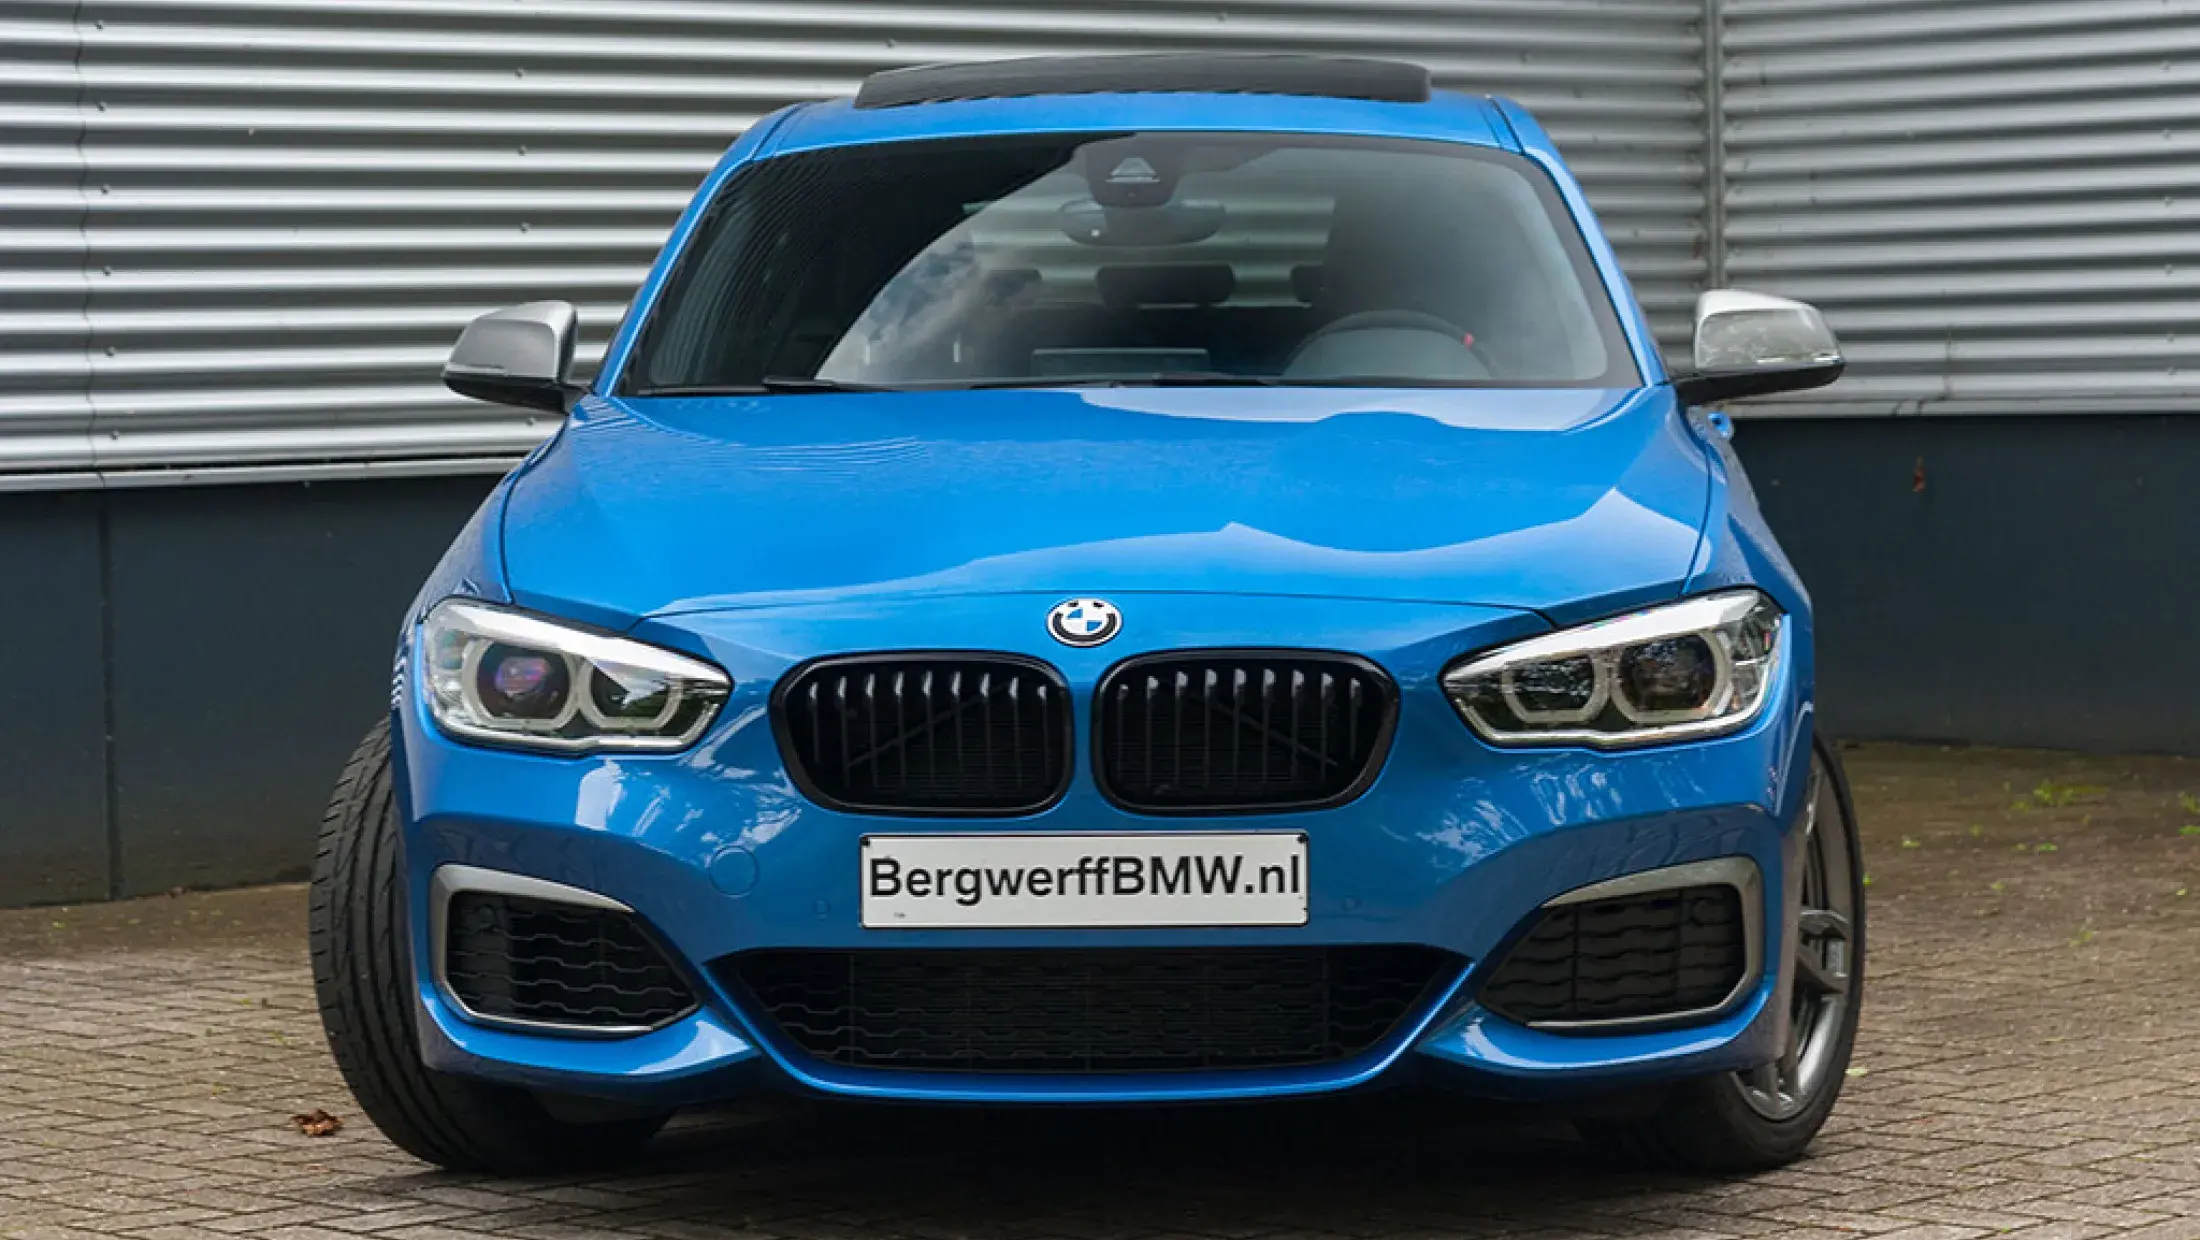 BMW 1-serie M140i 5-deurs xDrive M-Performance Estoril Blue II F20 Bergwerff